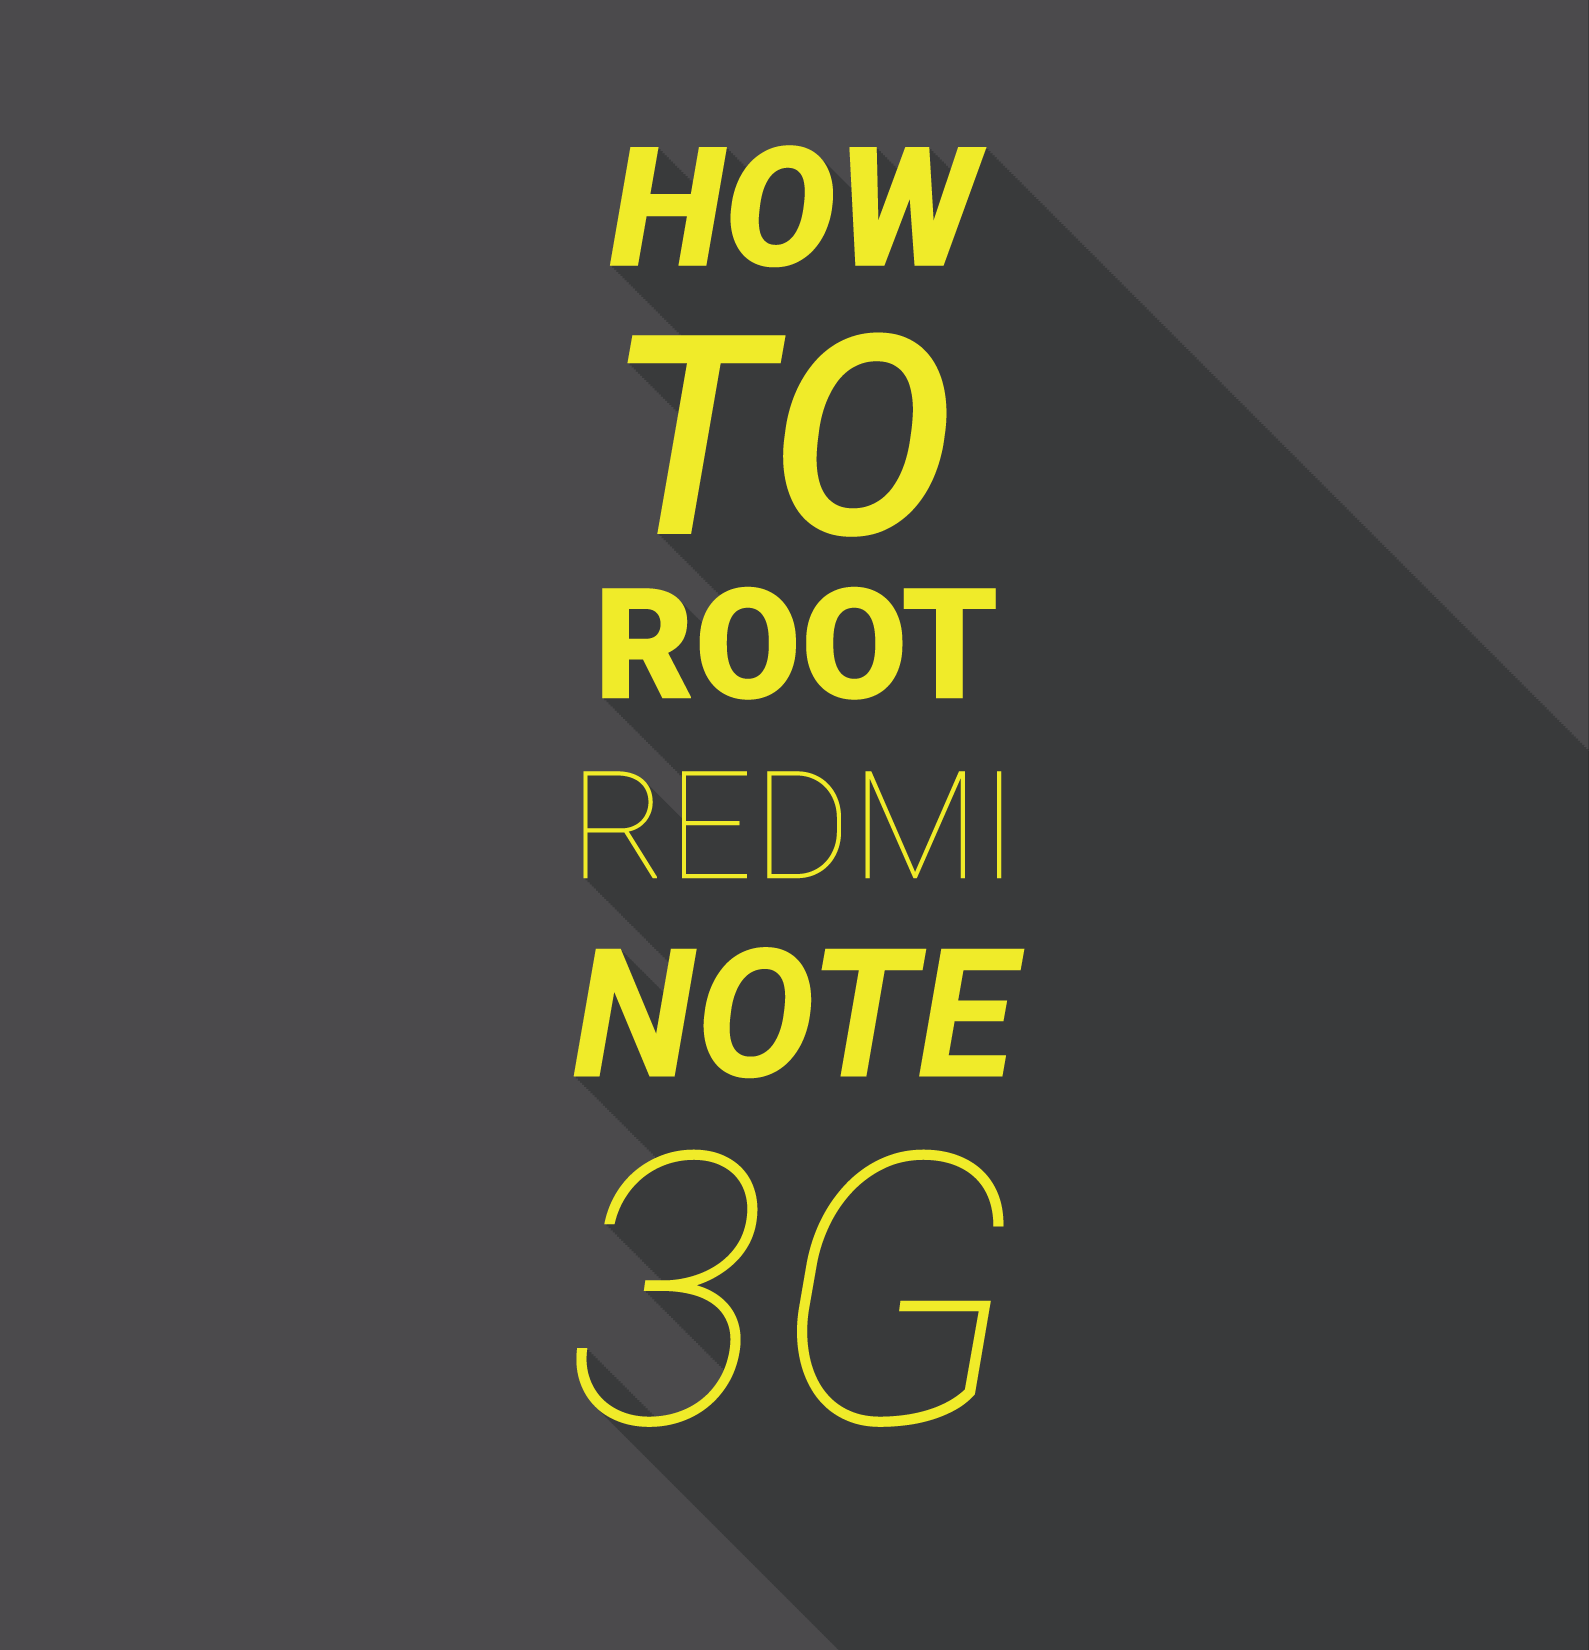 Rooting Xiaomi Smartphones : How To Root Xiaomi Redmi Note 3G